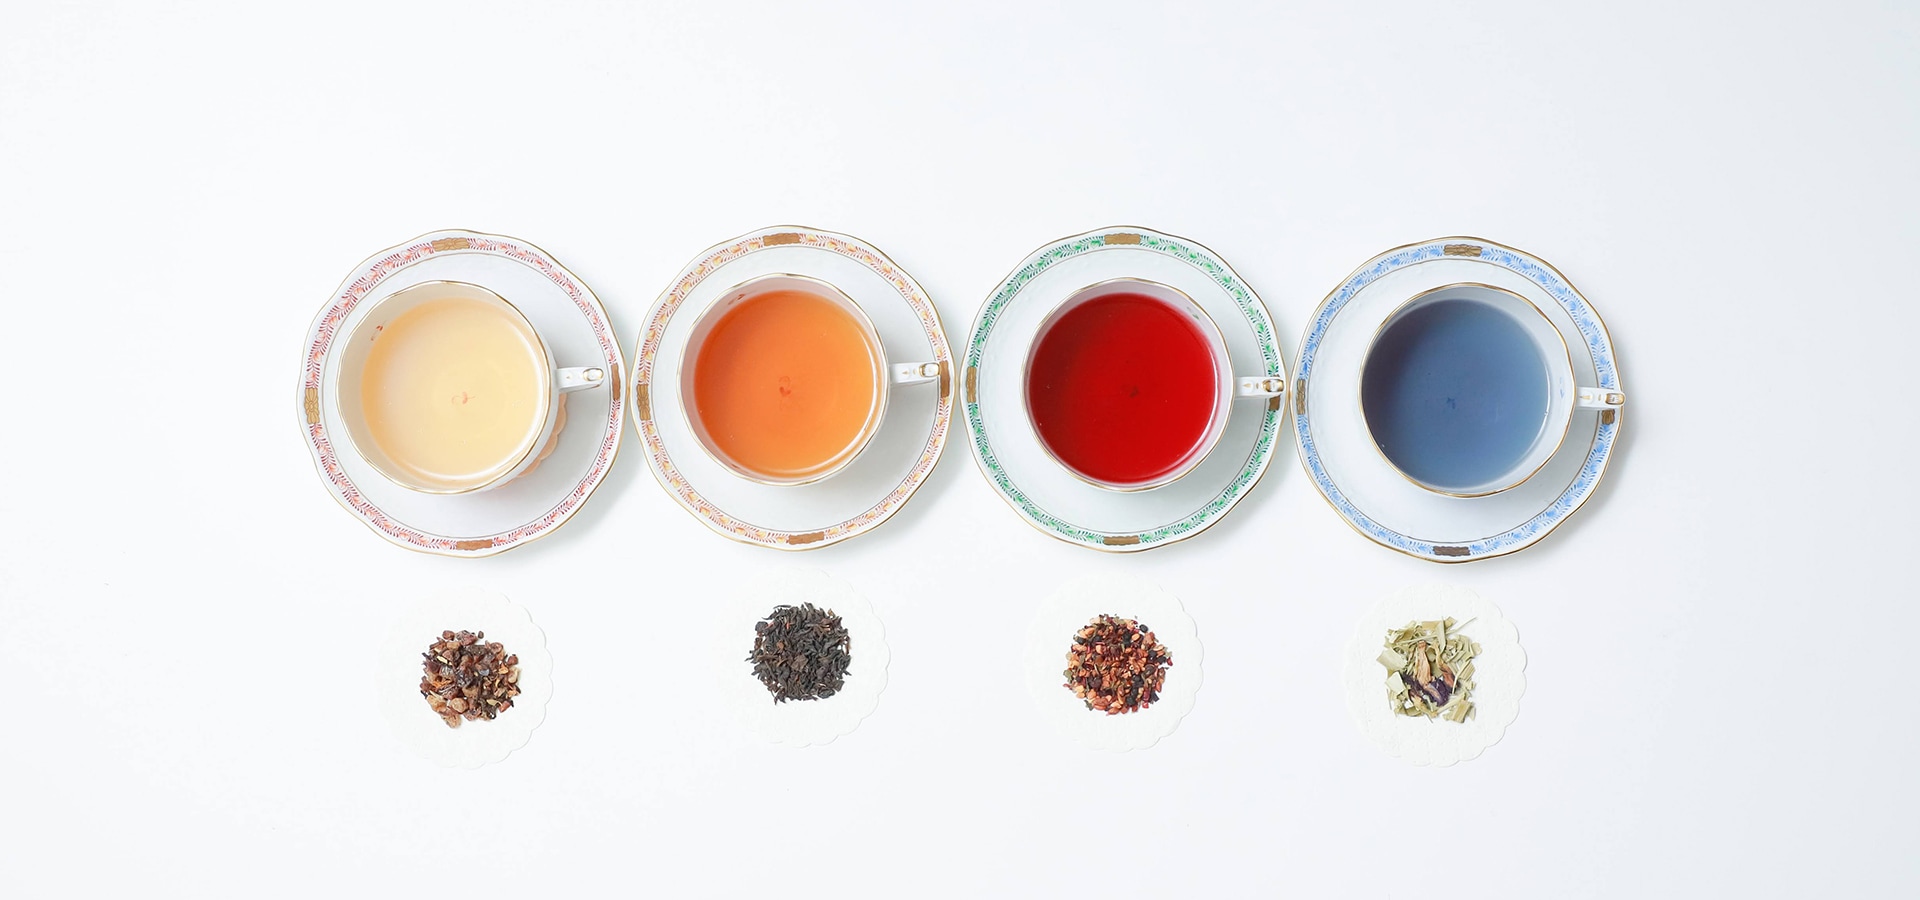 和田企画が扱う色とりどりの紅茶の画像